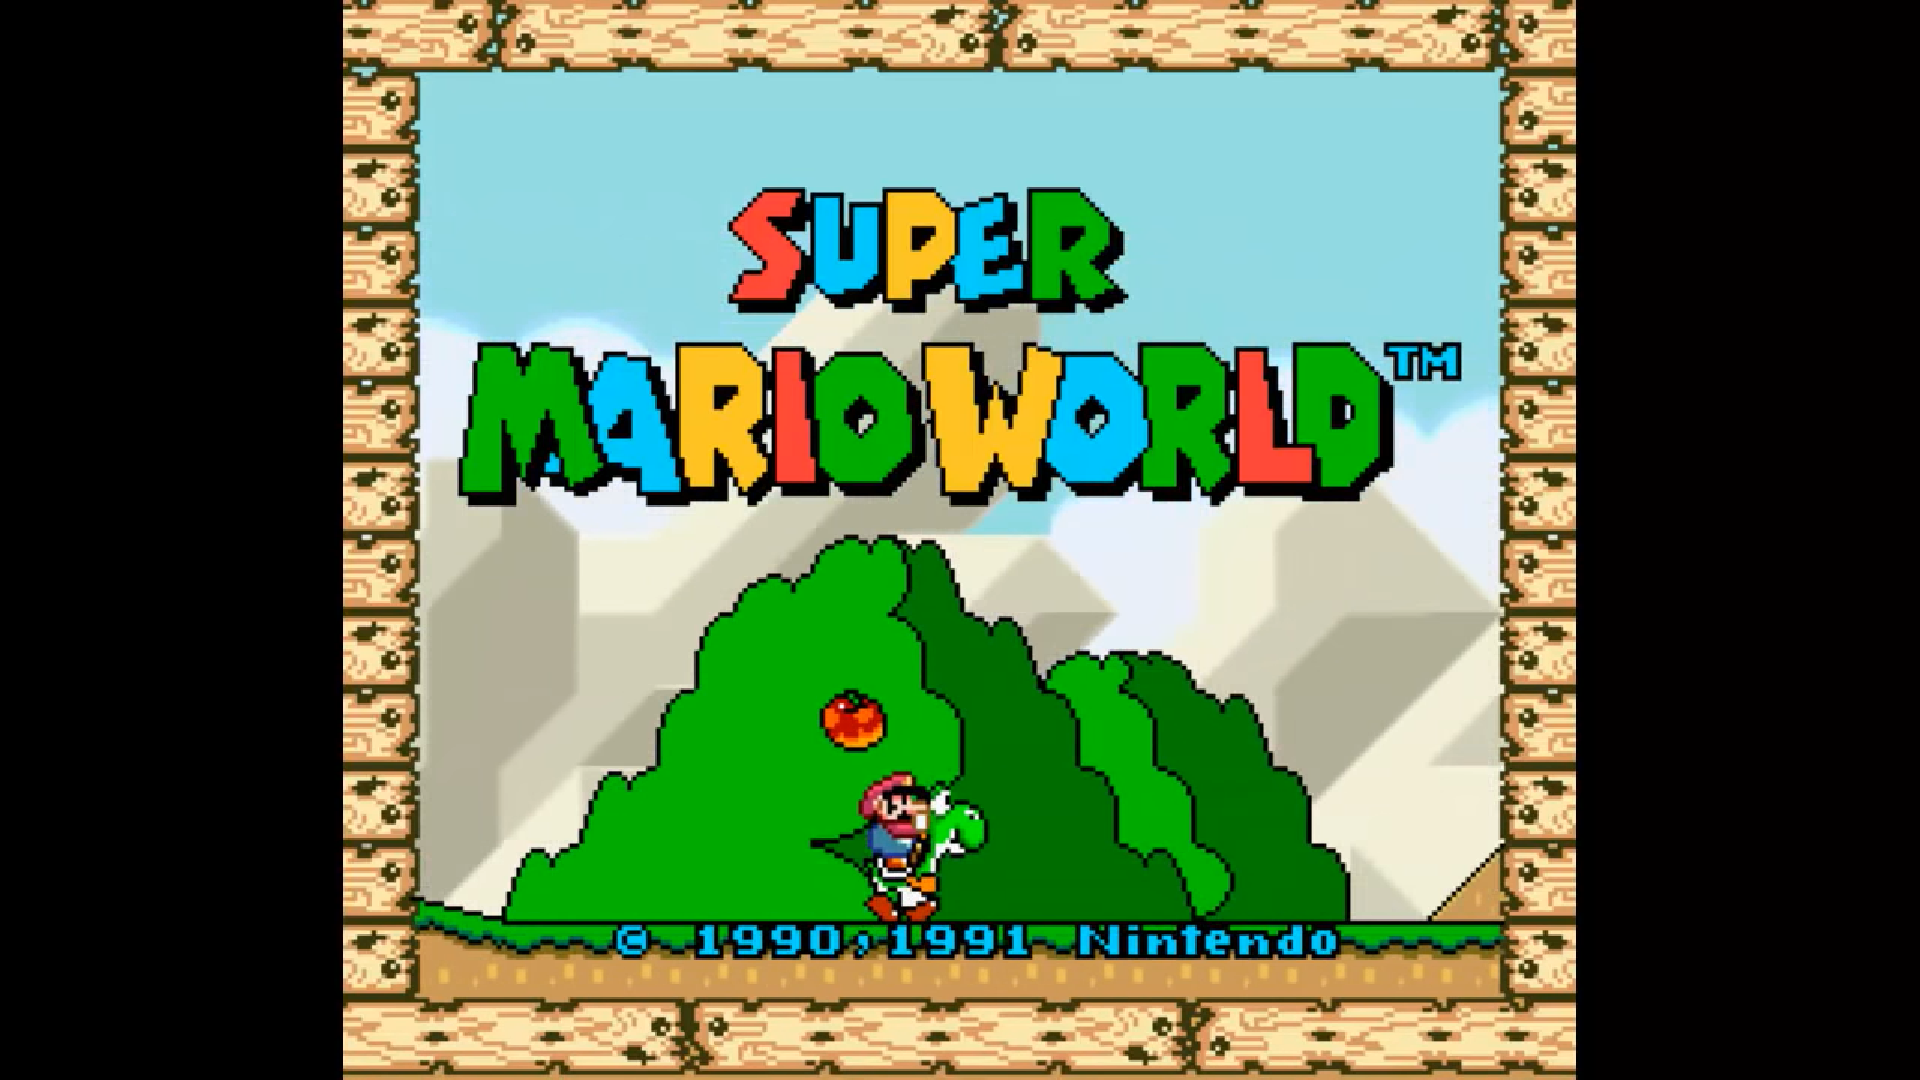 Super Mario World izdan je za Nintendovu novu konzolu SNES krajem 1990. godine, a znakovit je po tome što se u njemu po prvi puta pojavio Yoshi. Igra broji 72 nivoa, od kojih većina ima samo jedan izlaz, dok su prvi put u neke nivoe uvedeni i dodatni, tajni izlazi. Mario je dobio mogućnost skoka s okretom, a vraćena je i super gljiva.